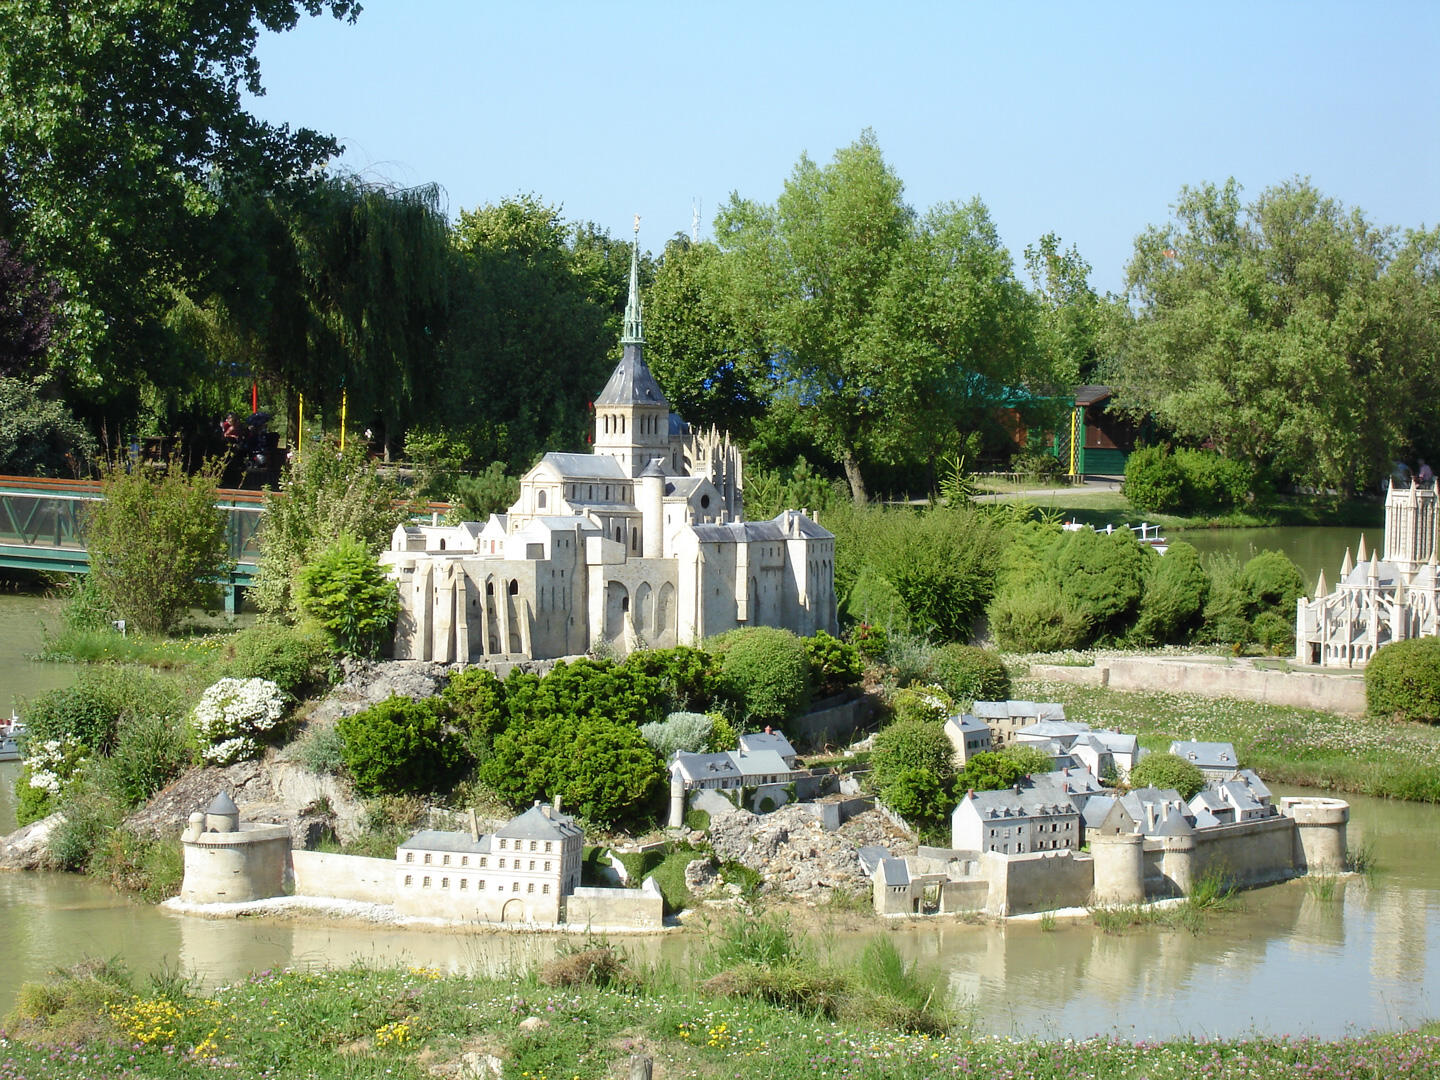 Maqueta detallada de un castillo francés rodeado de edificios históricos en miniatura y vegetación, reflejando la herencia de Francia en el parque France Miniature.